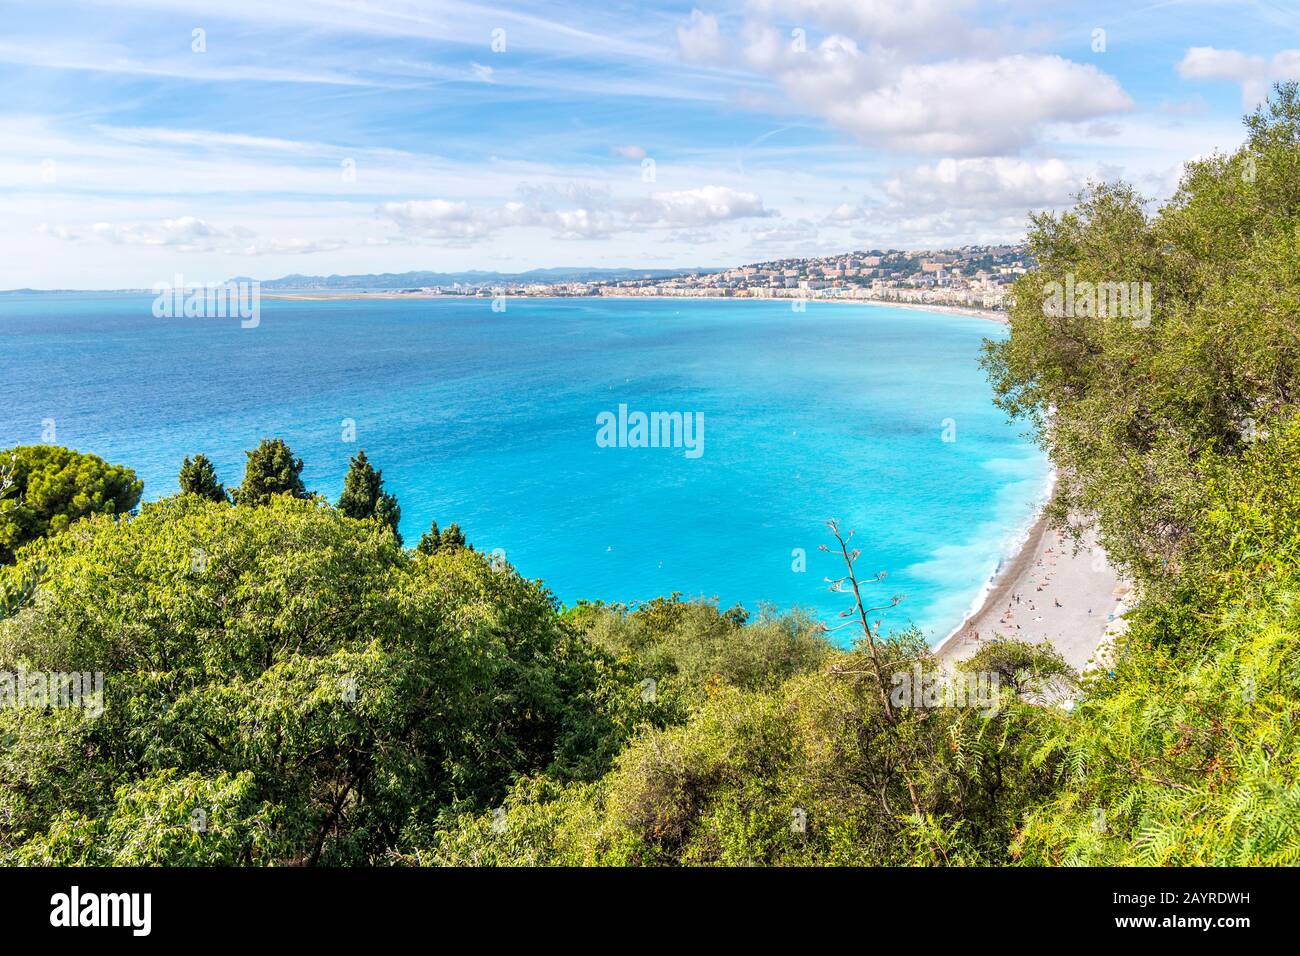 Vista sul mare e sulla città della costa della Costa Azzurra dalla terrazza che si affaccia sulla Baia degli Angeli sulla collina del Castello di Nizza, Francia. Foto Stock